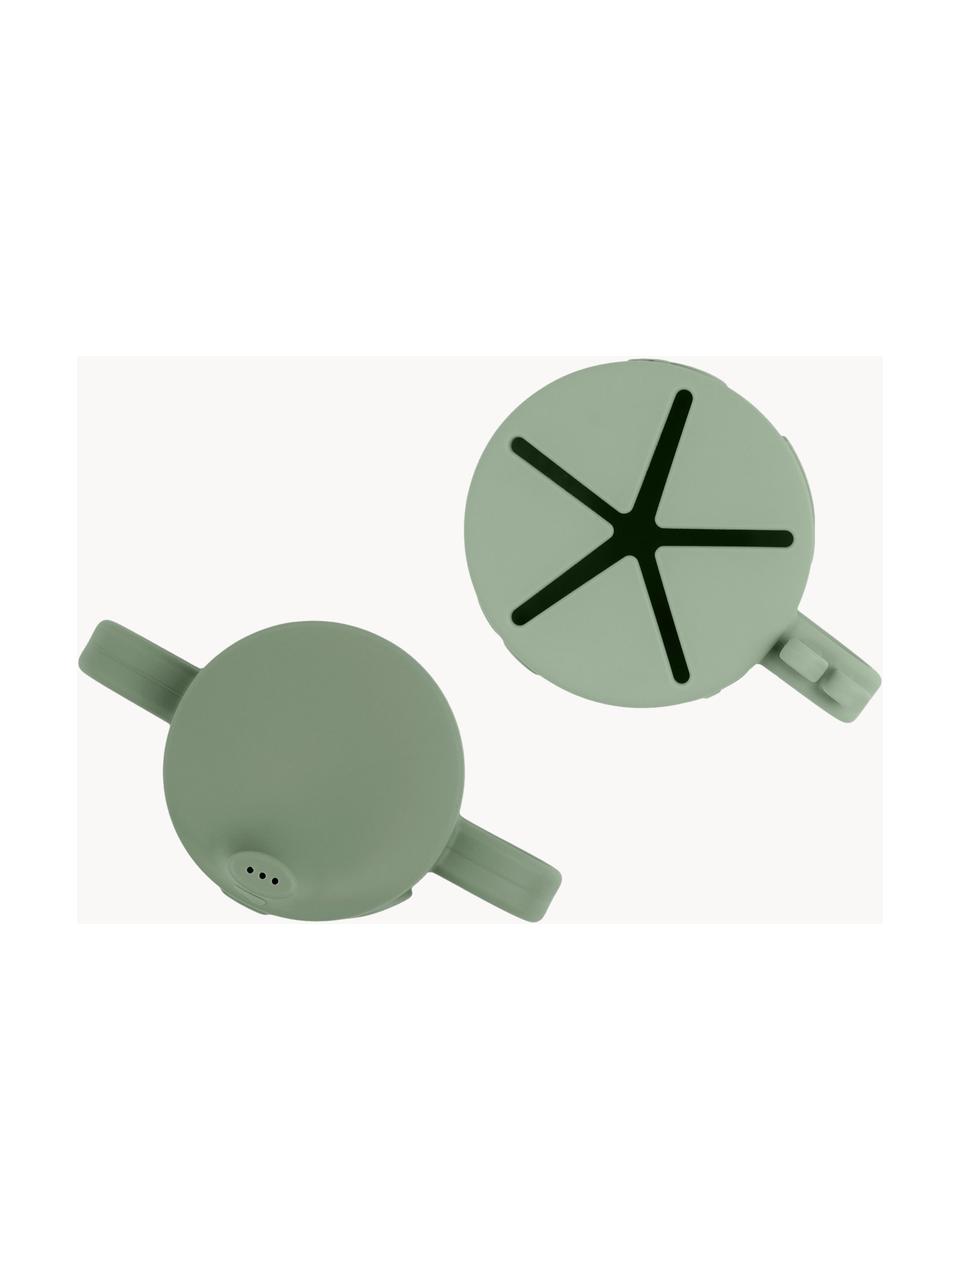 Komplet pojemnika na przekąski i kubka Peekaboo, 2 elem., 100% silikon, Szałwiowy zielony, Komplet z różnymi rozmiarami